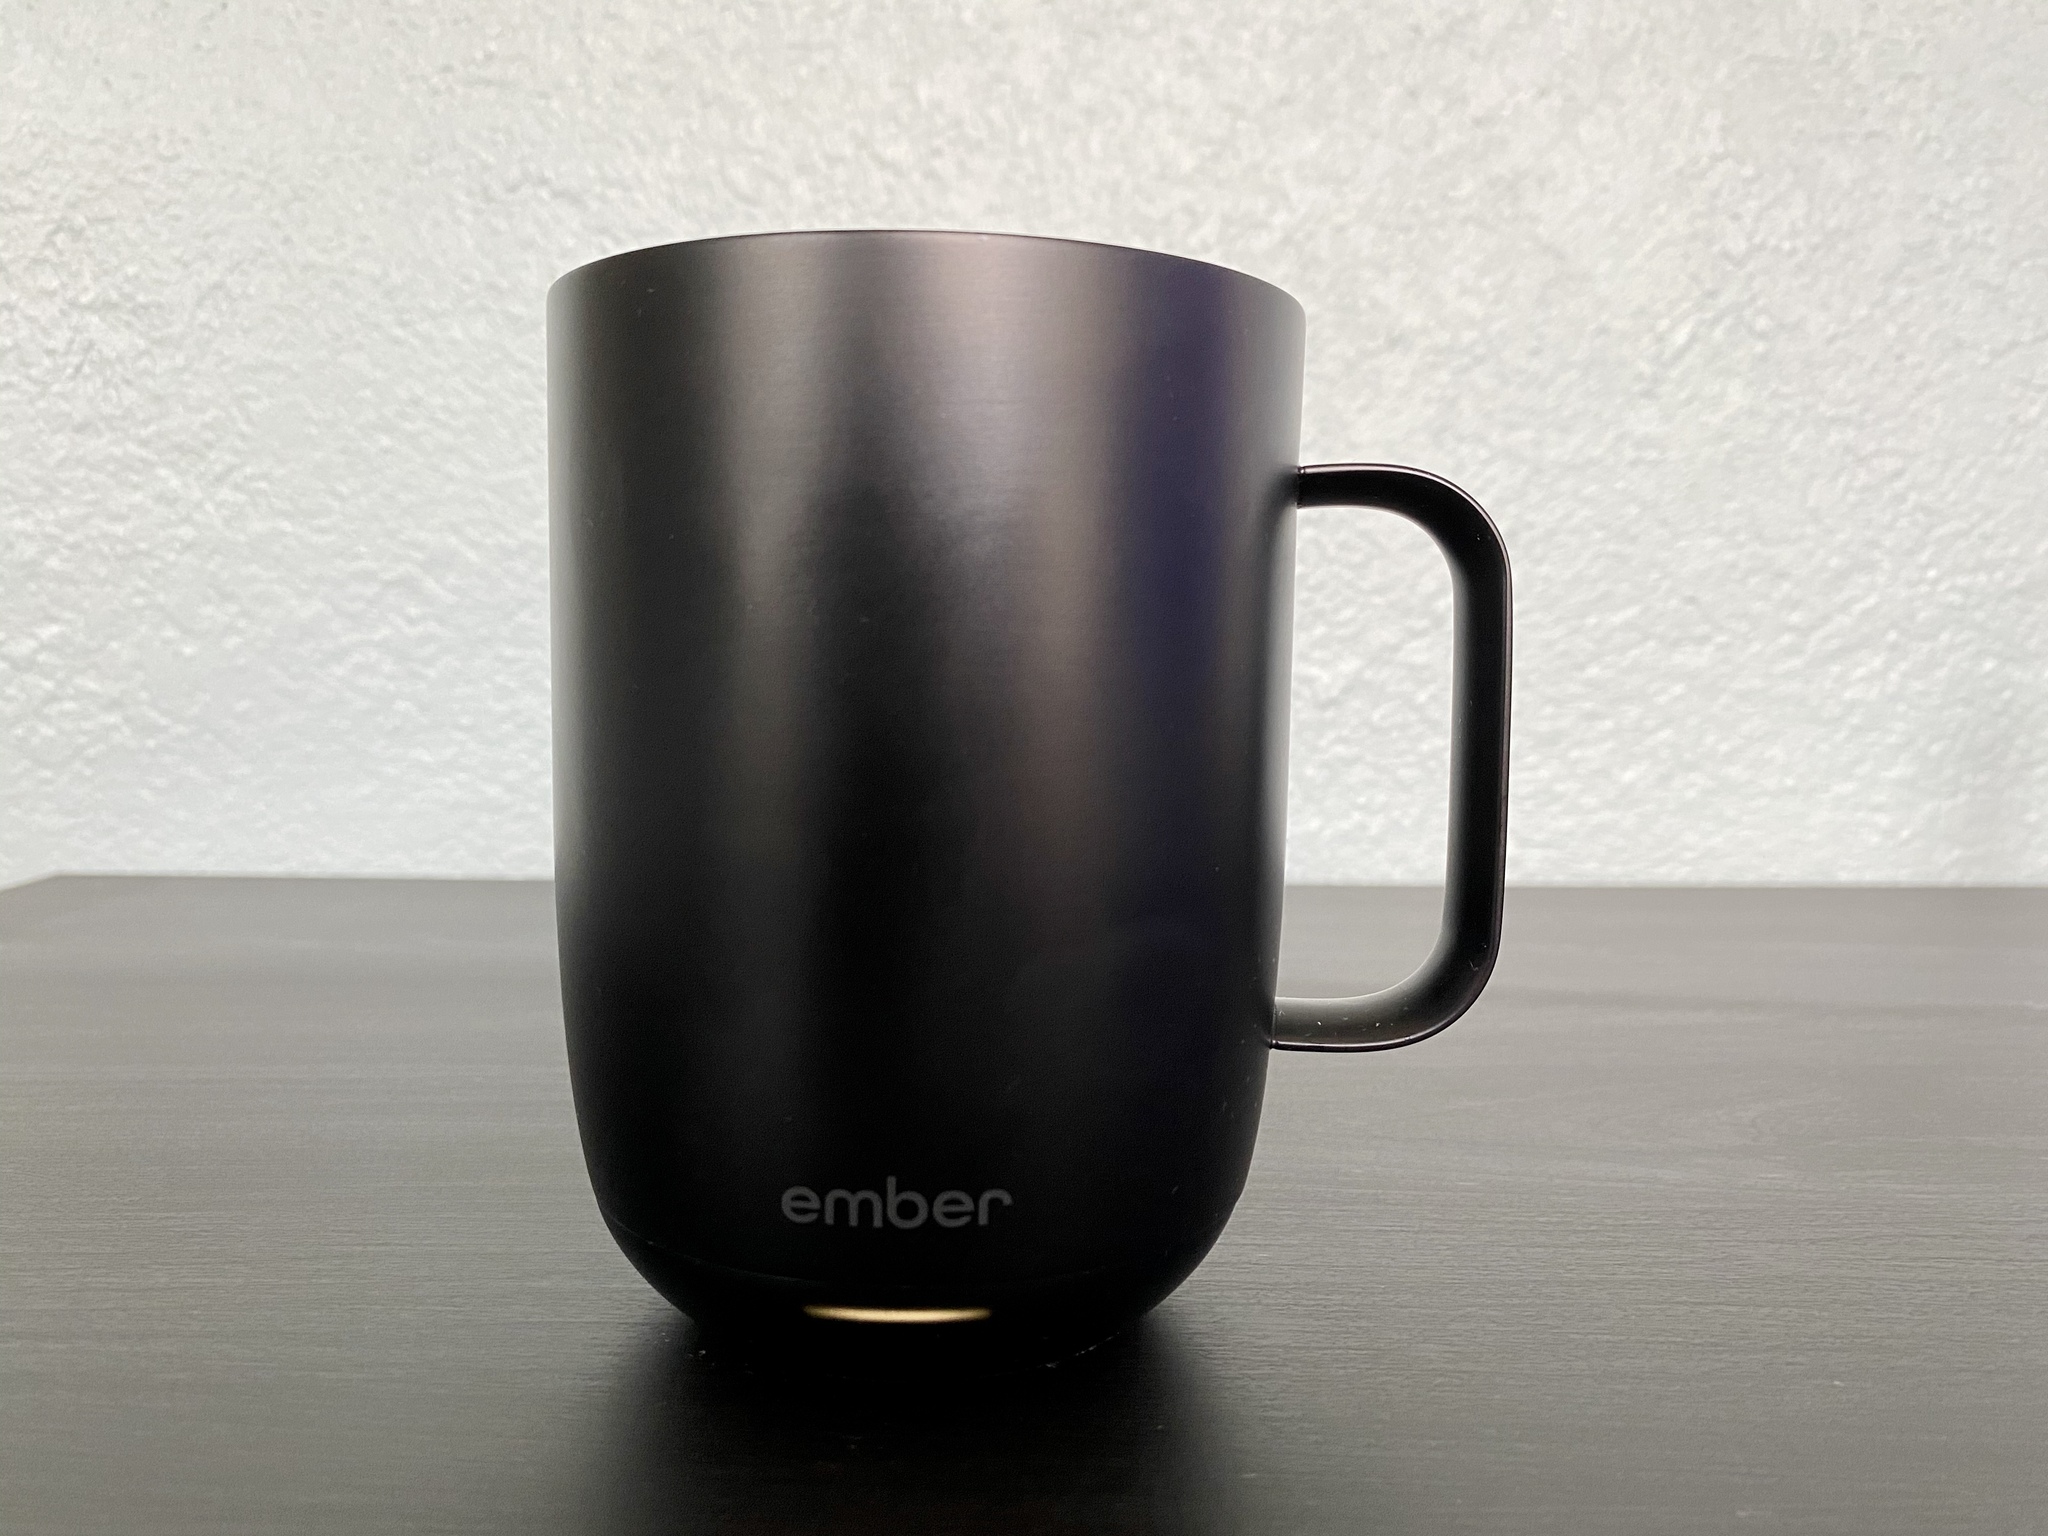 Ember Mug Temperature Control Smart Mug 10 Oz-gold